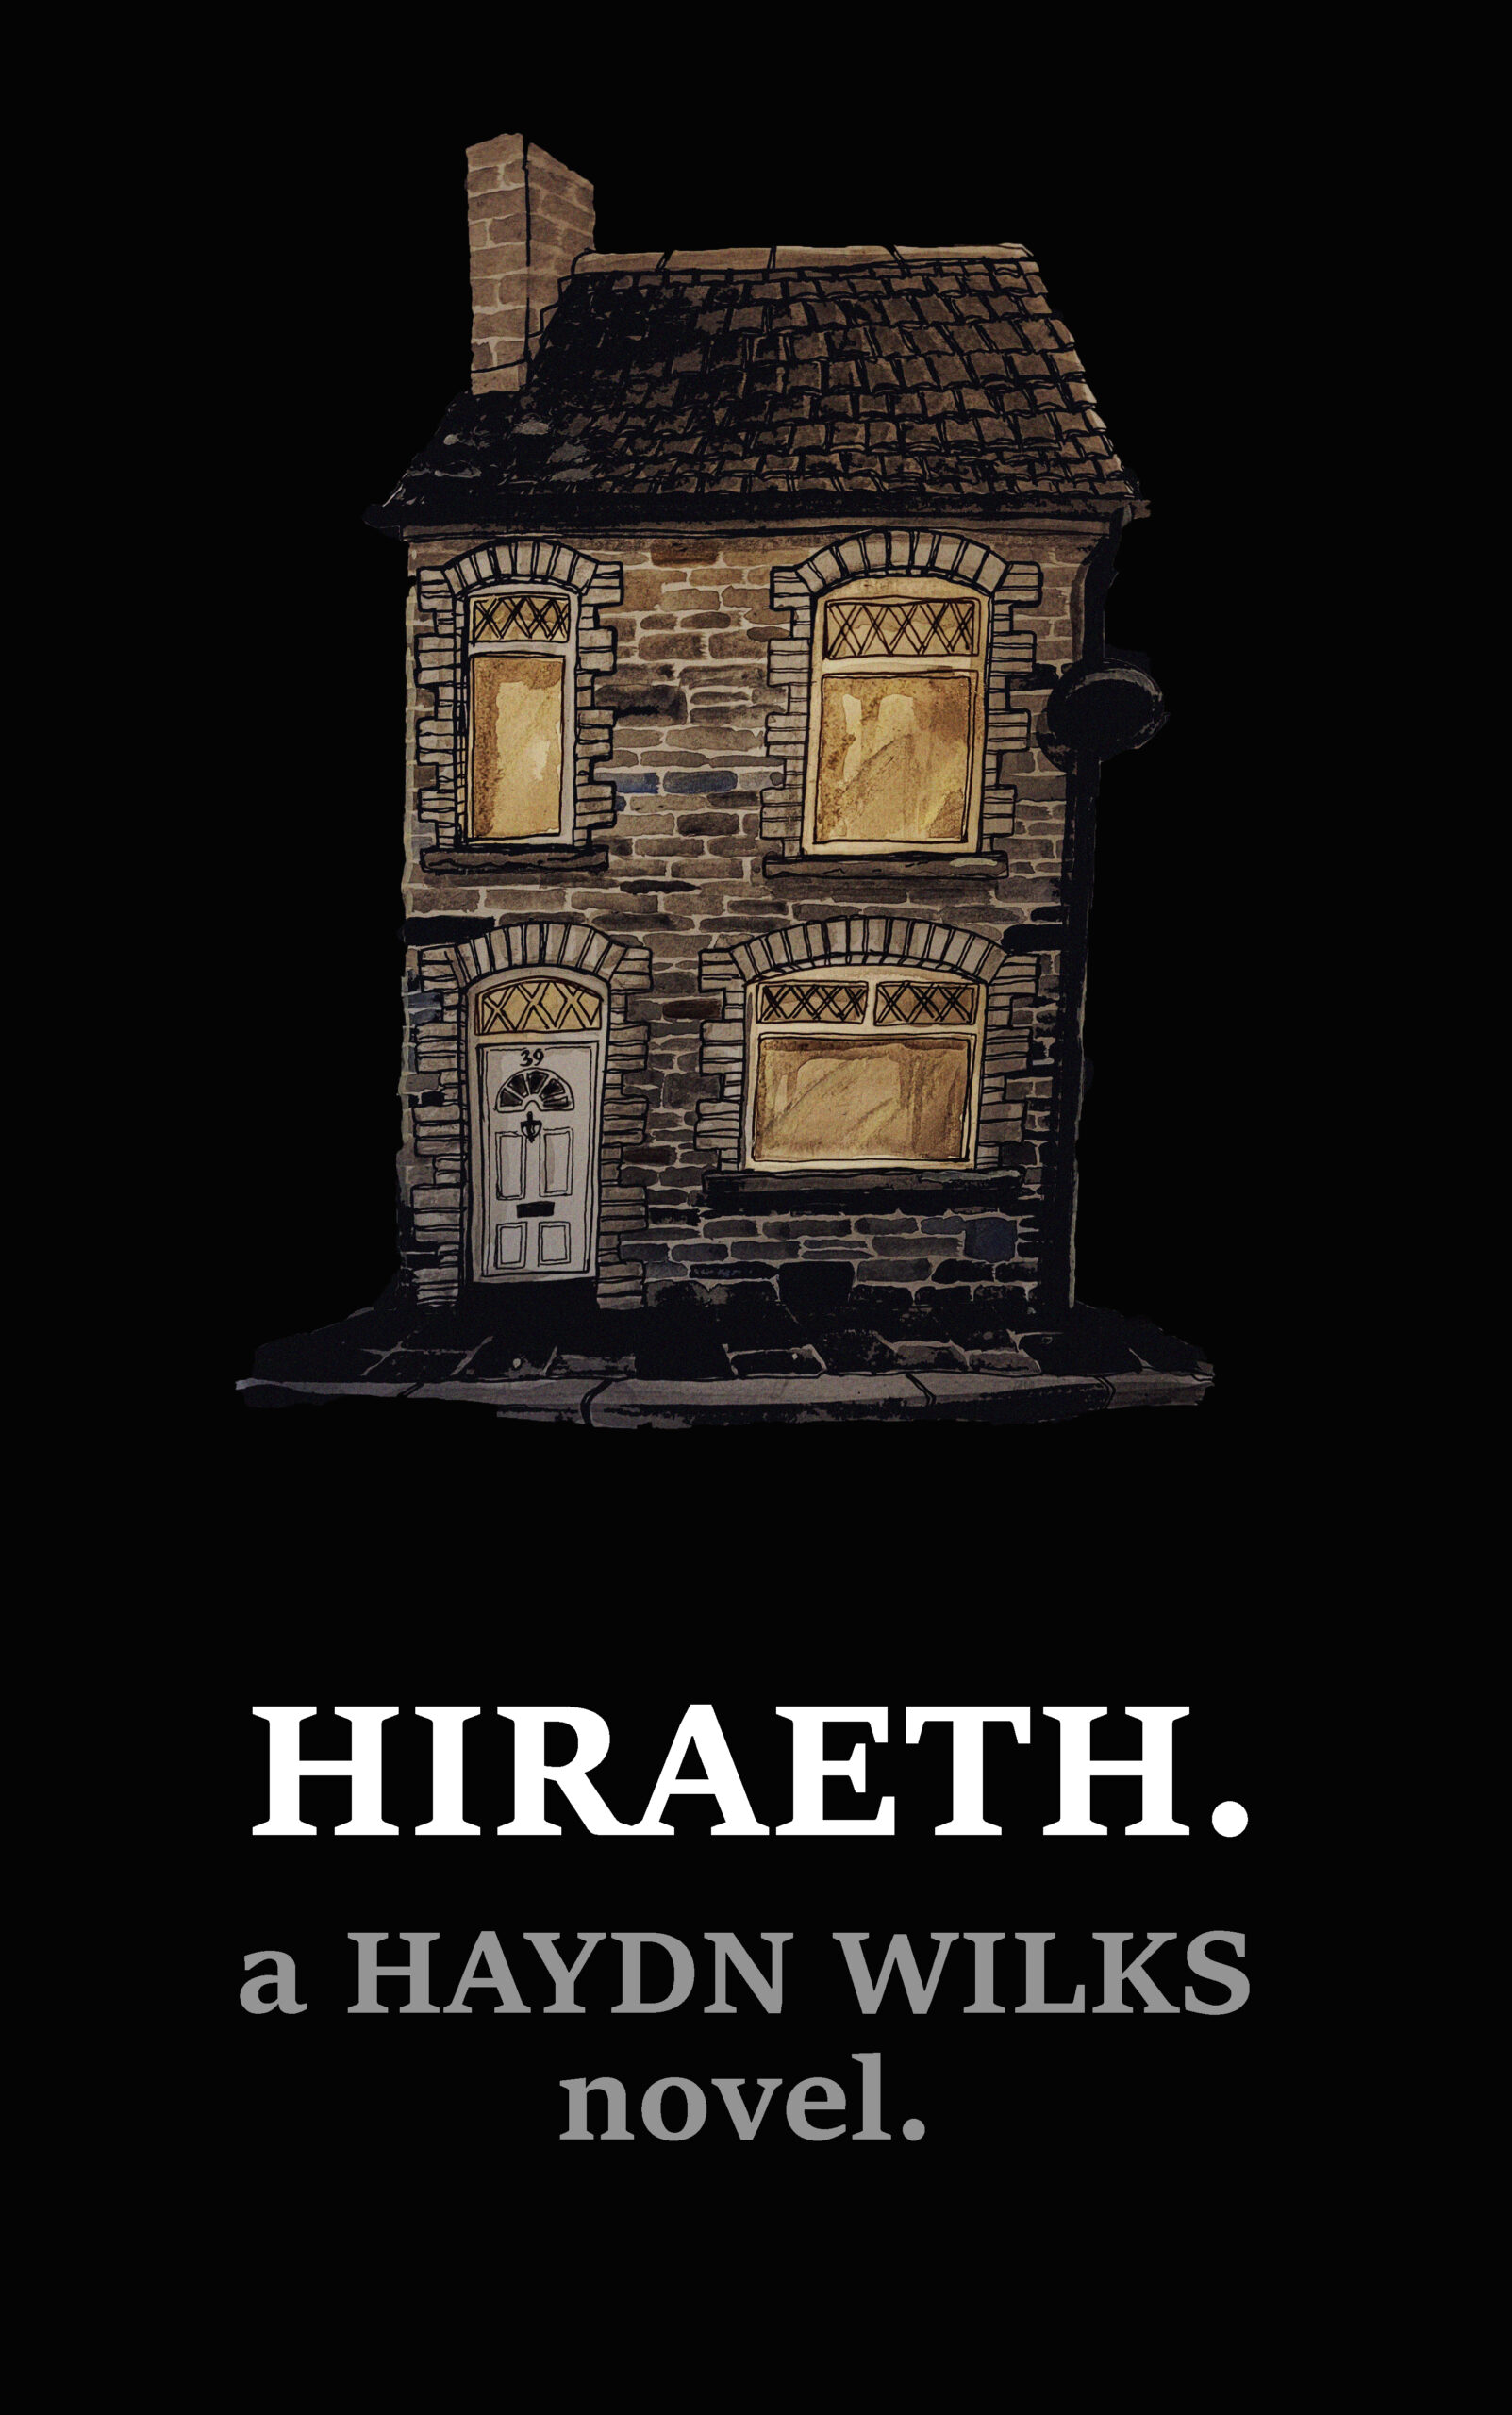 HIRAETH. by Haydn Wilks